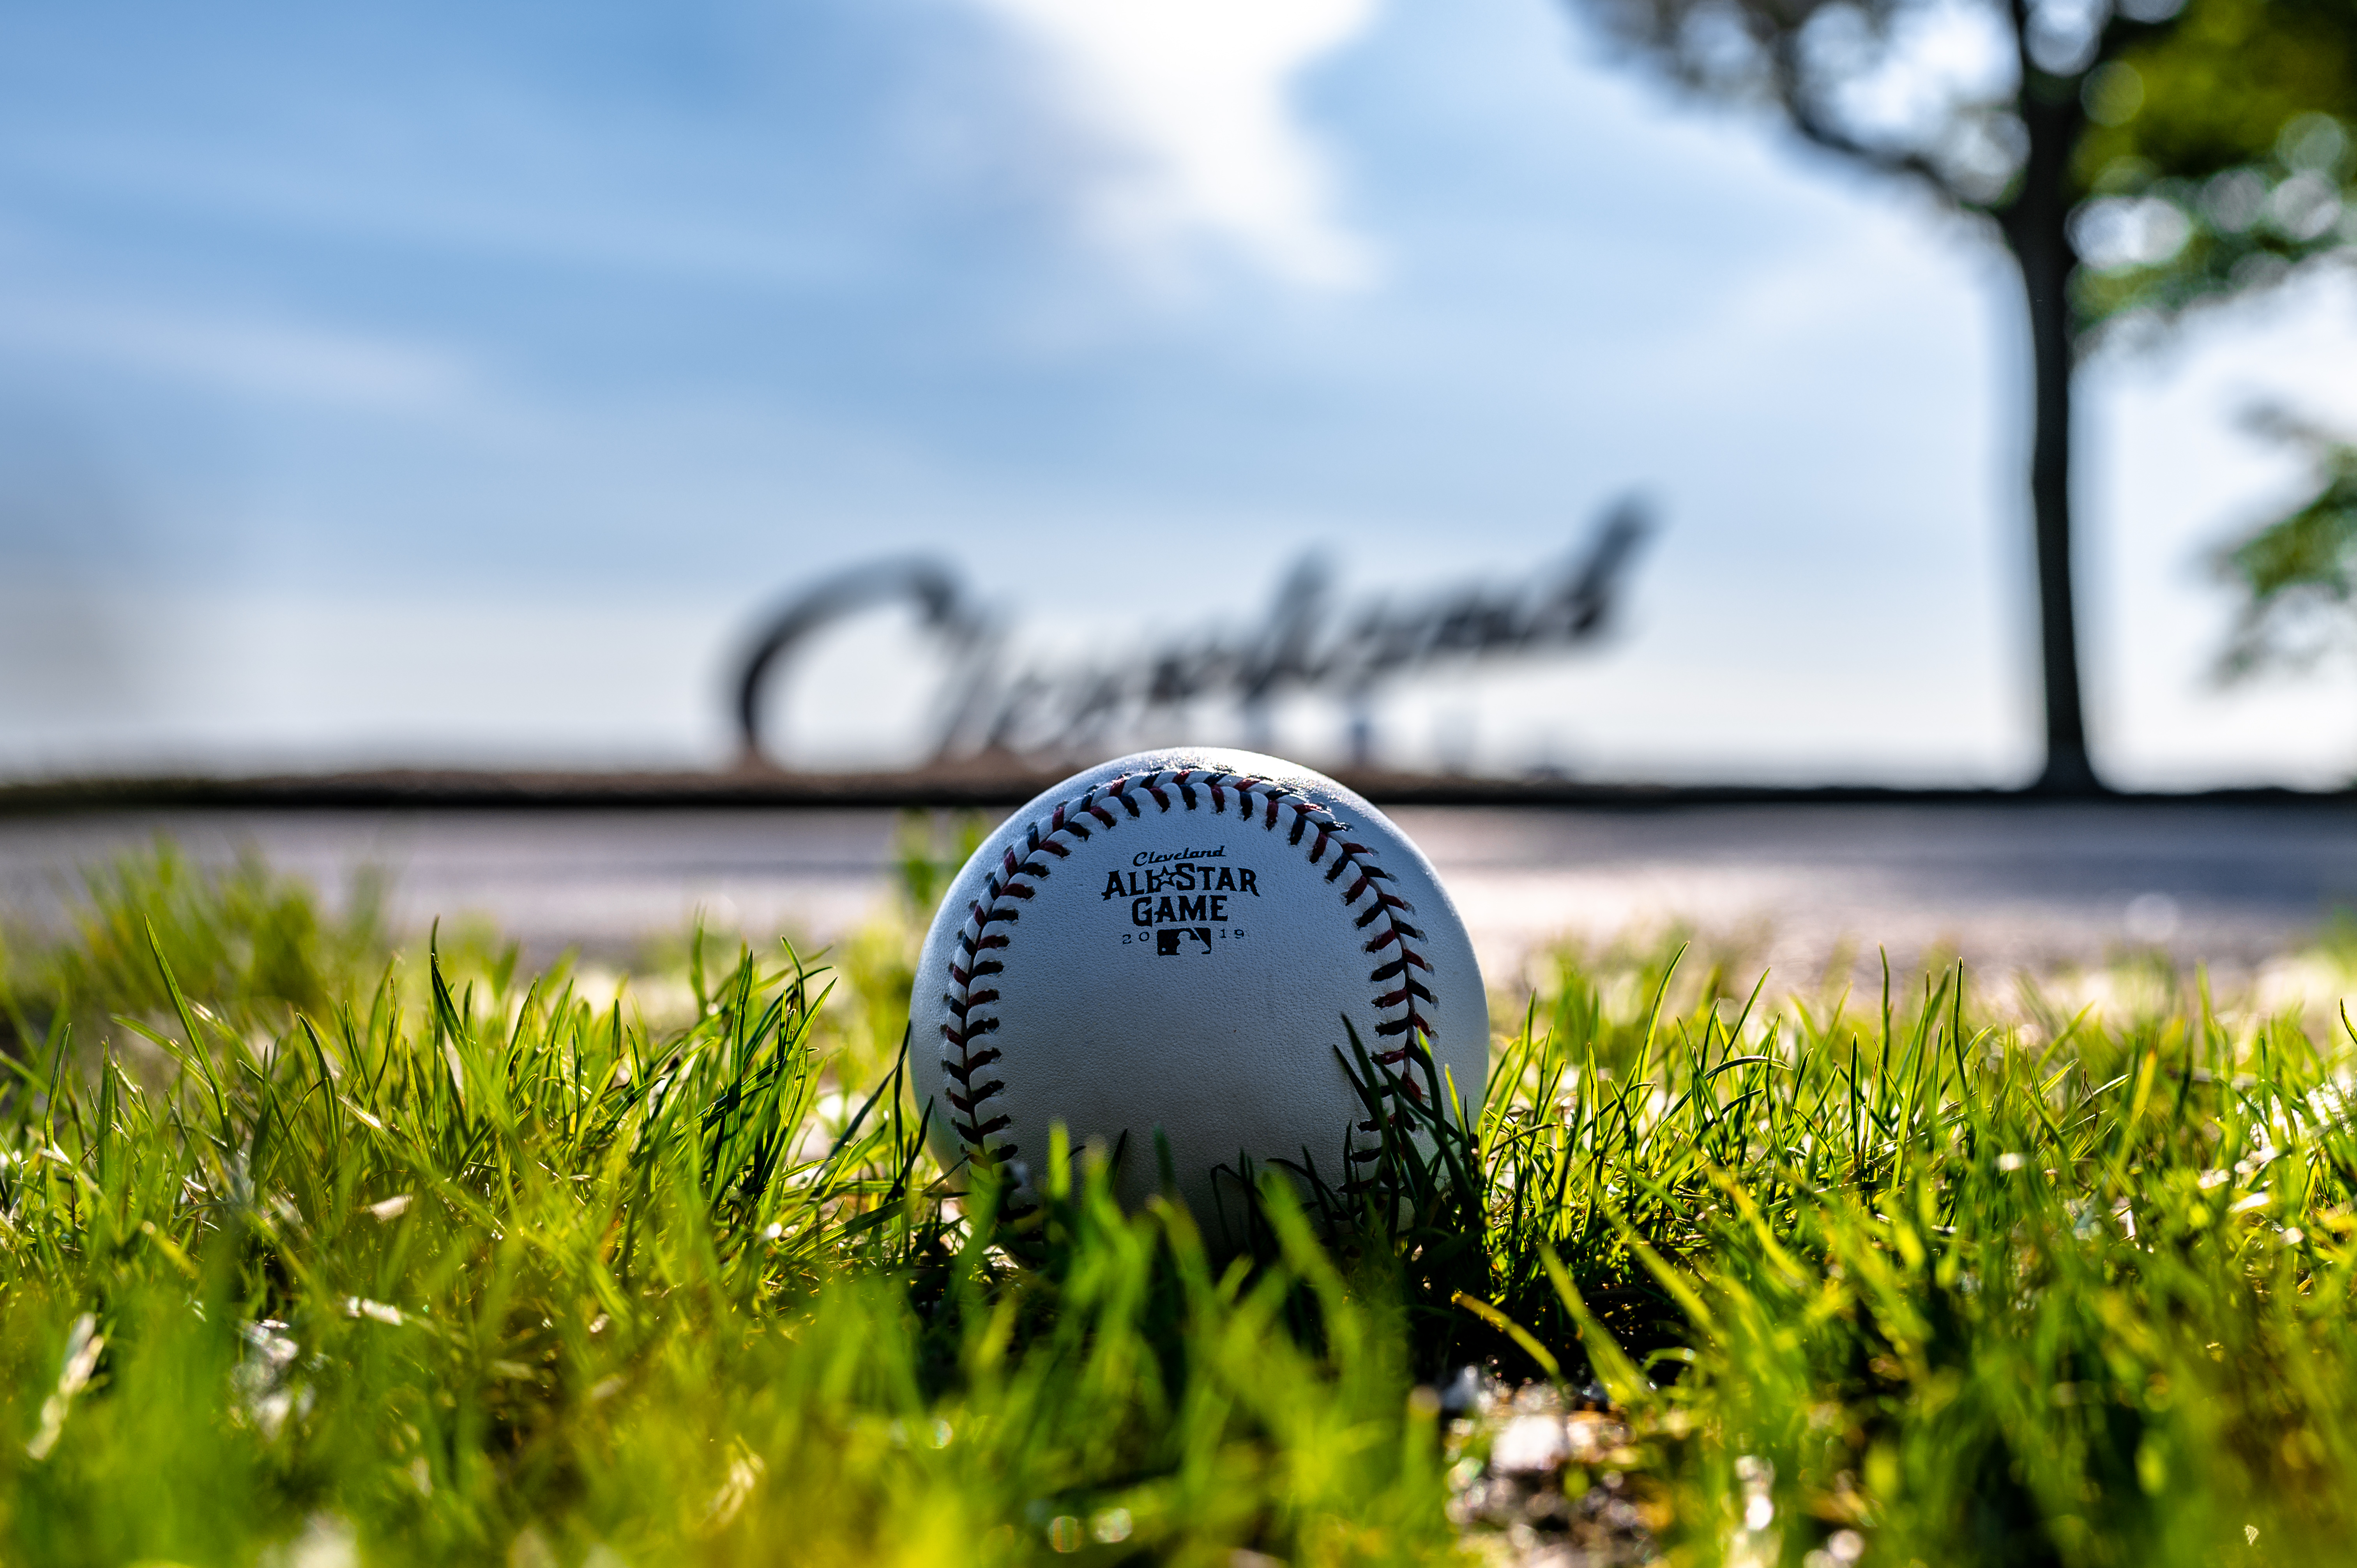 Descargar las imágenes de Béisbol gratis para teléfonos Android y iPhone,  fondos de pantalla de Béisbol para teléfonos móviles